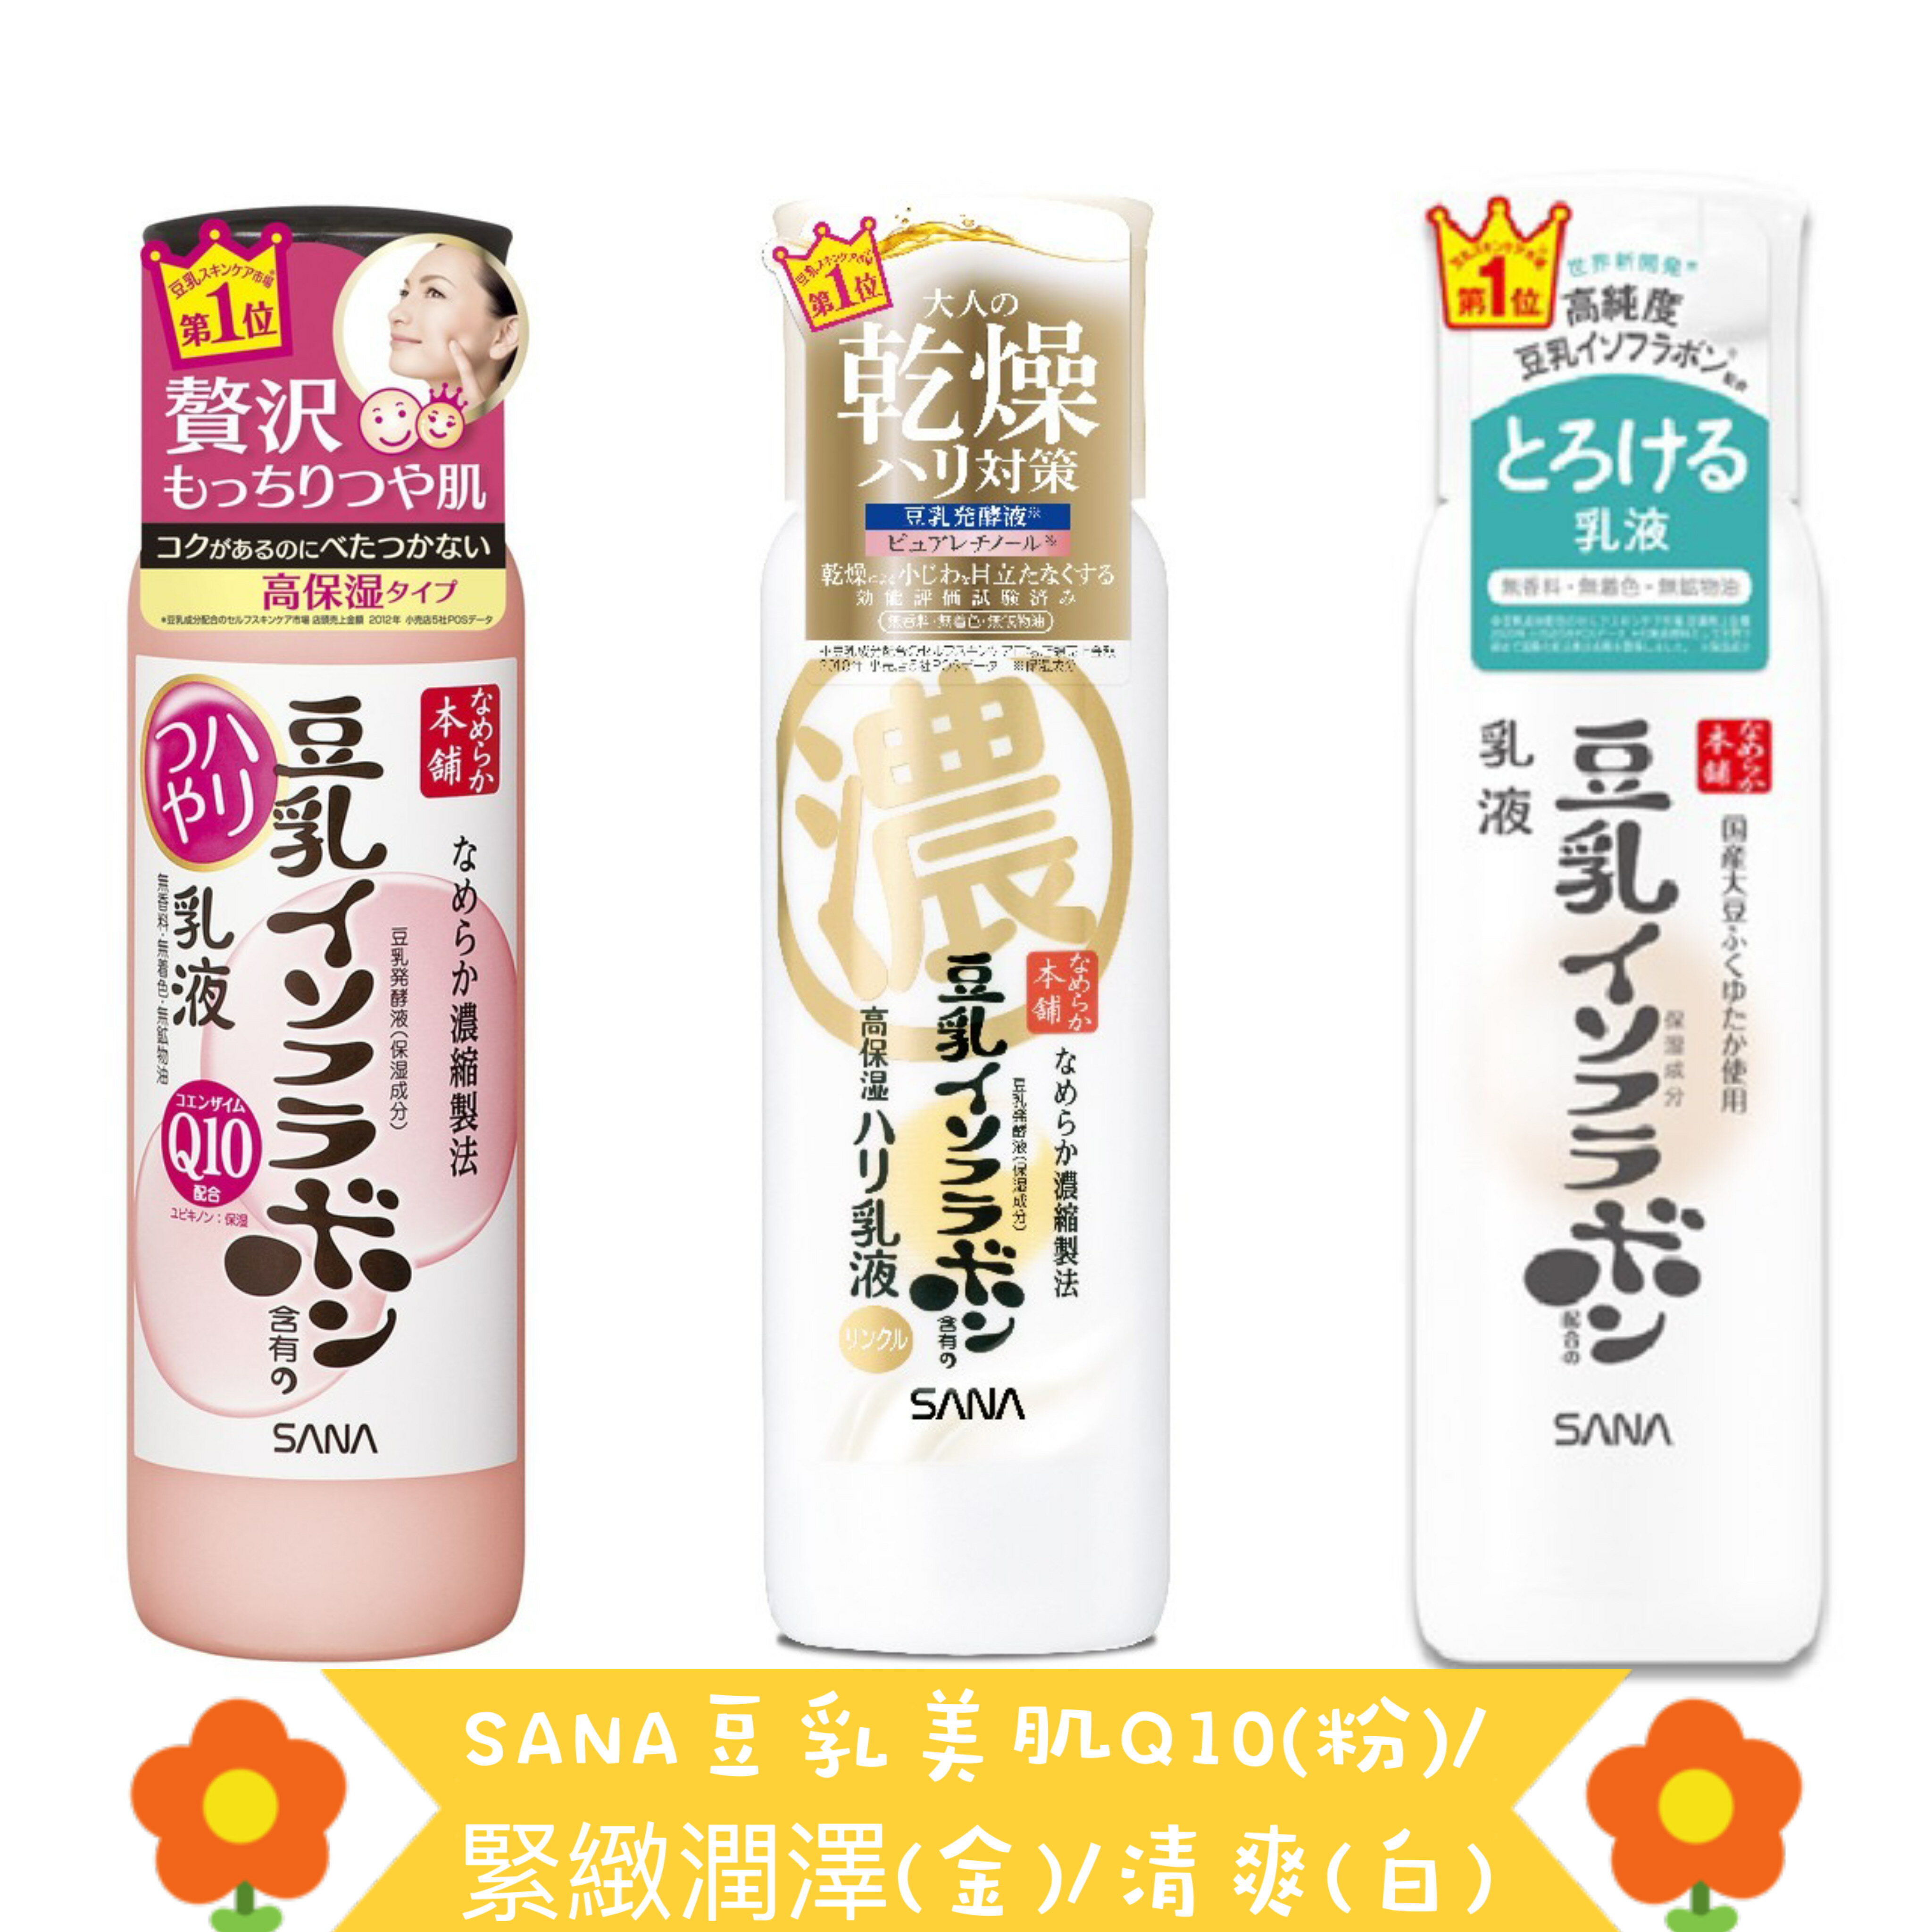 【台灣公司貨】SANA 豆乳美白保濕乳液 150ml